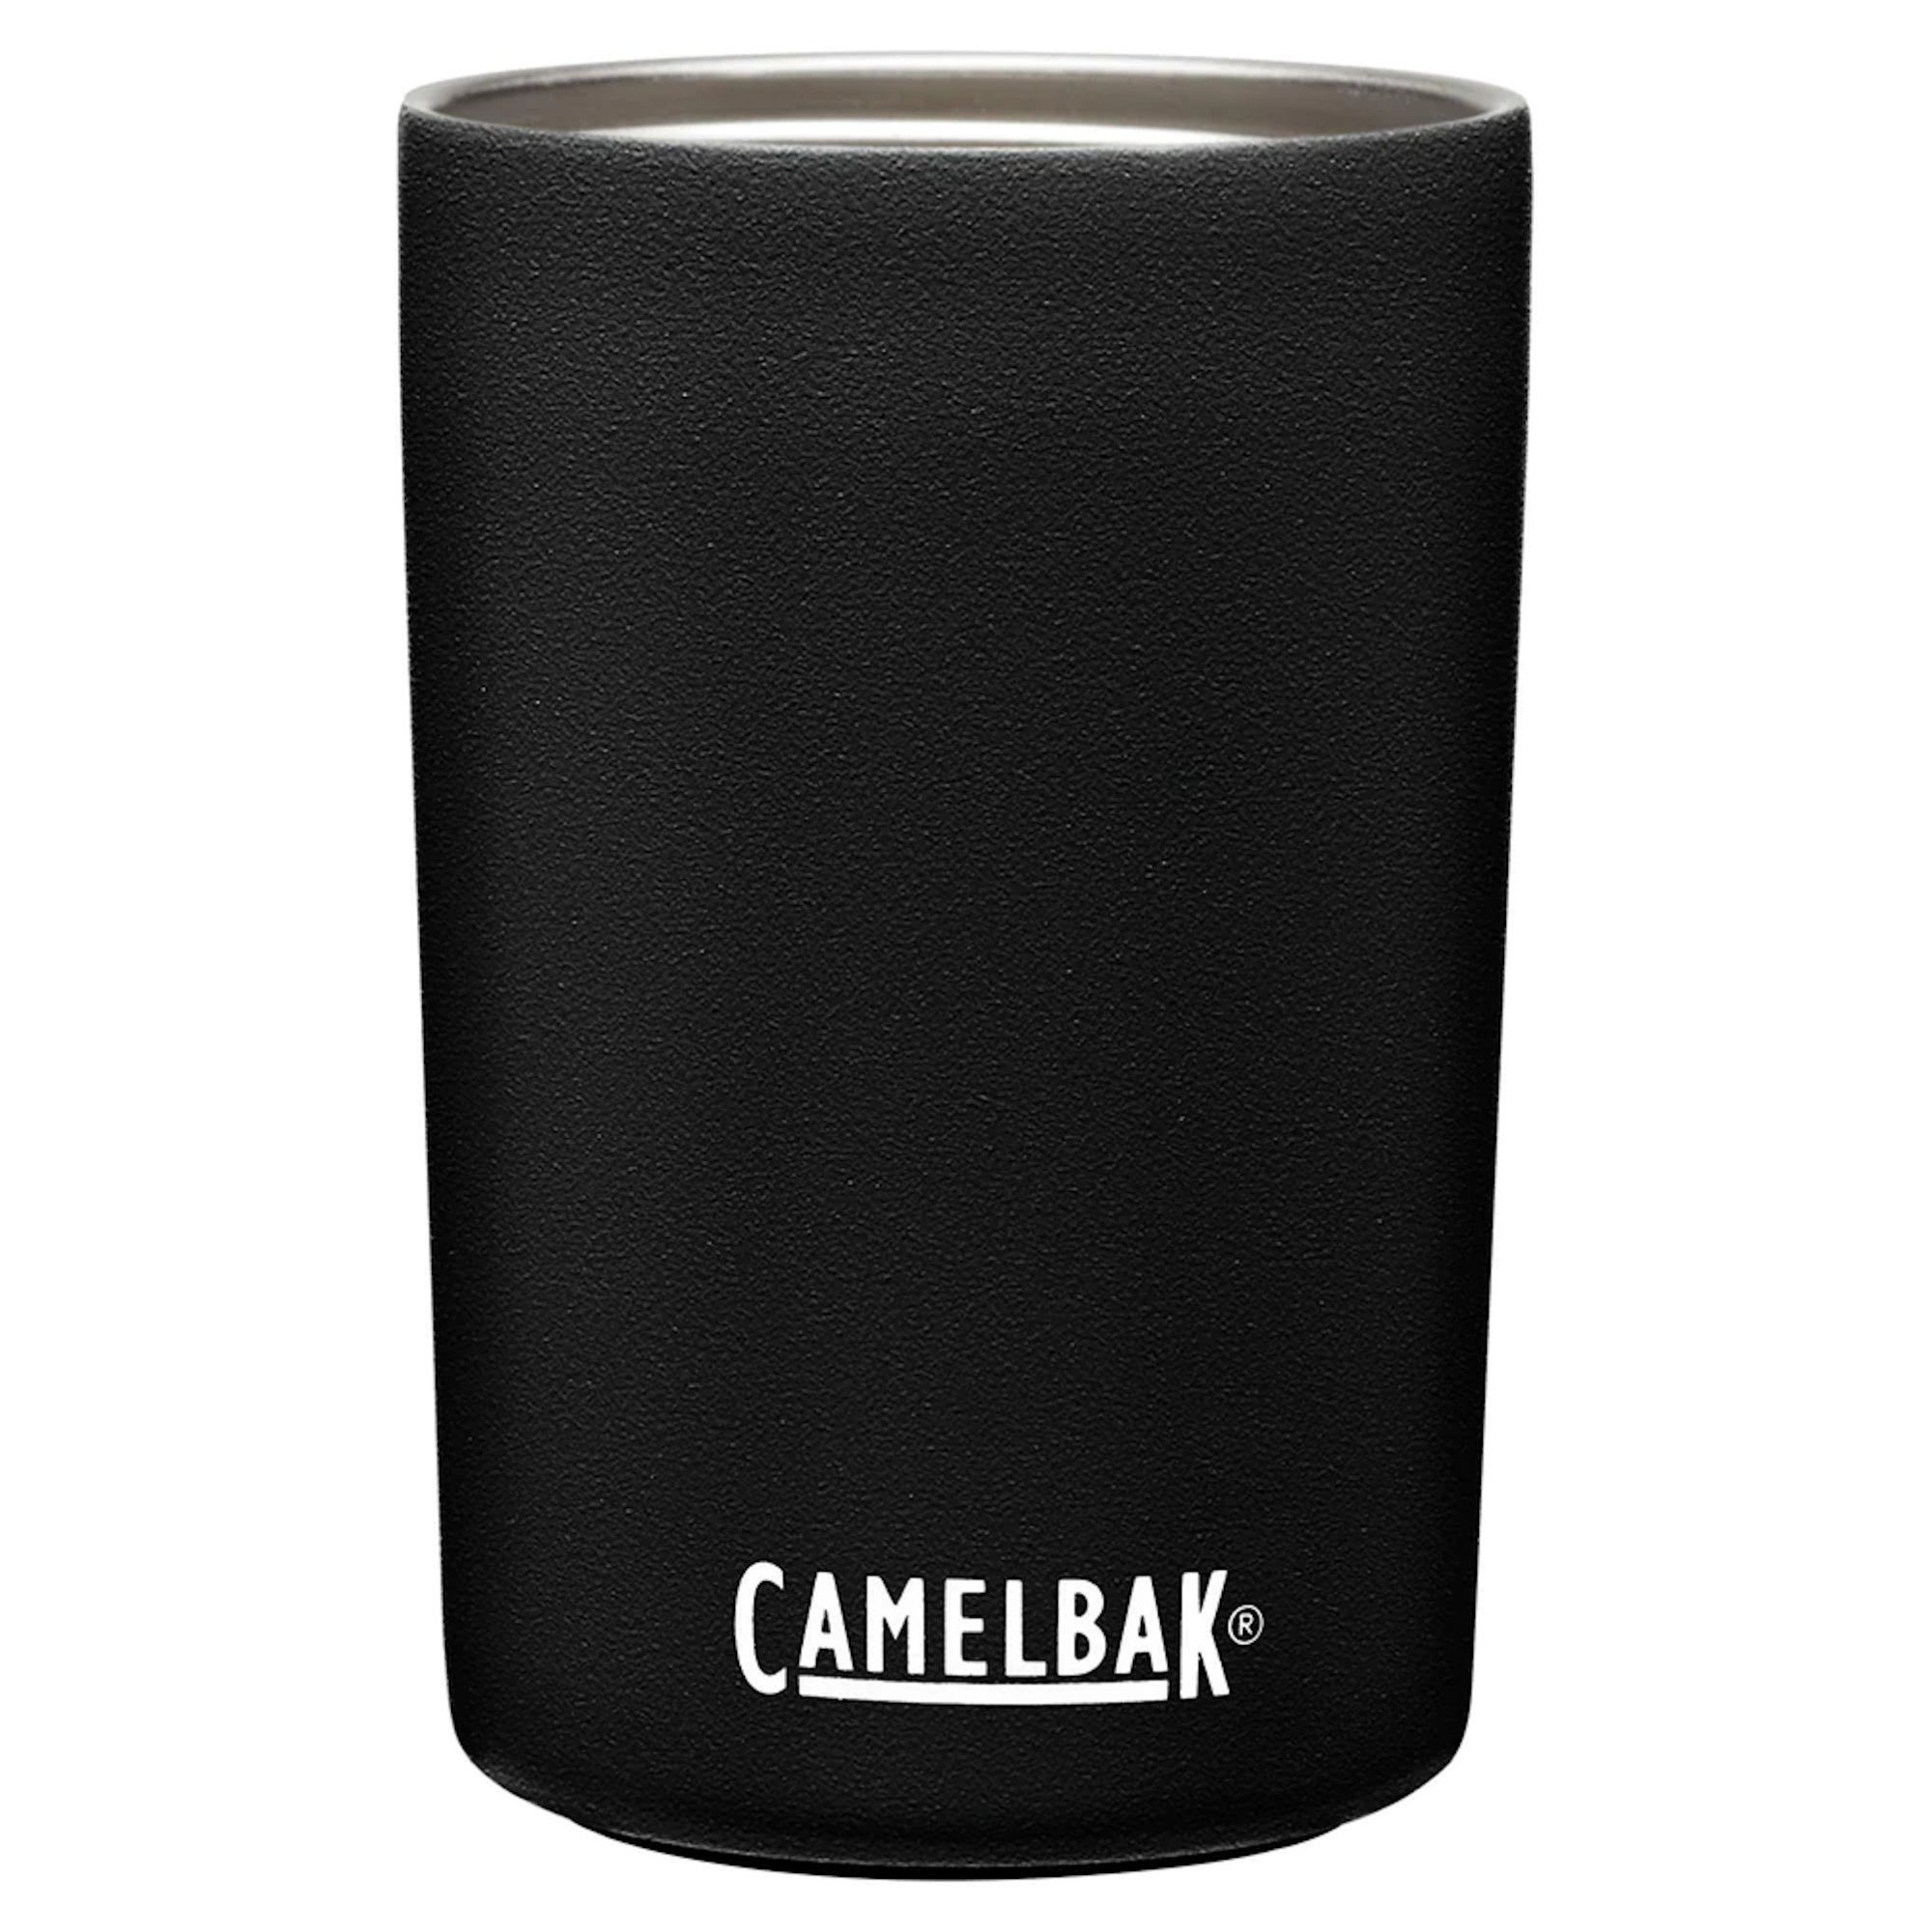 isolierte Camelbak MultiBev Thermoflasche Trinkflasche Thermosbecher Trinkbecher schwarz Edelstahl